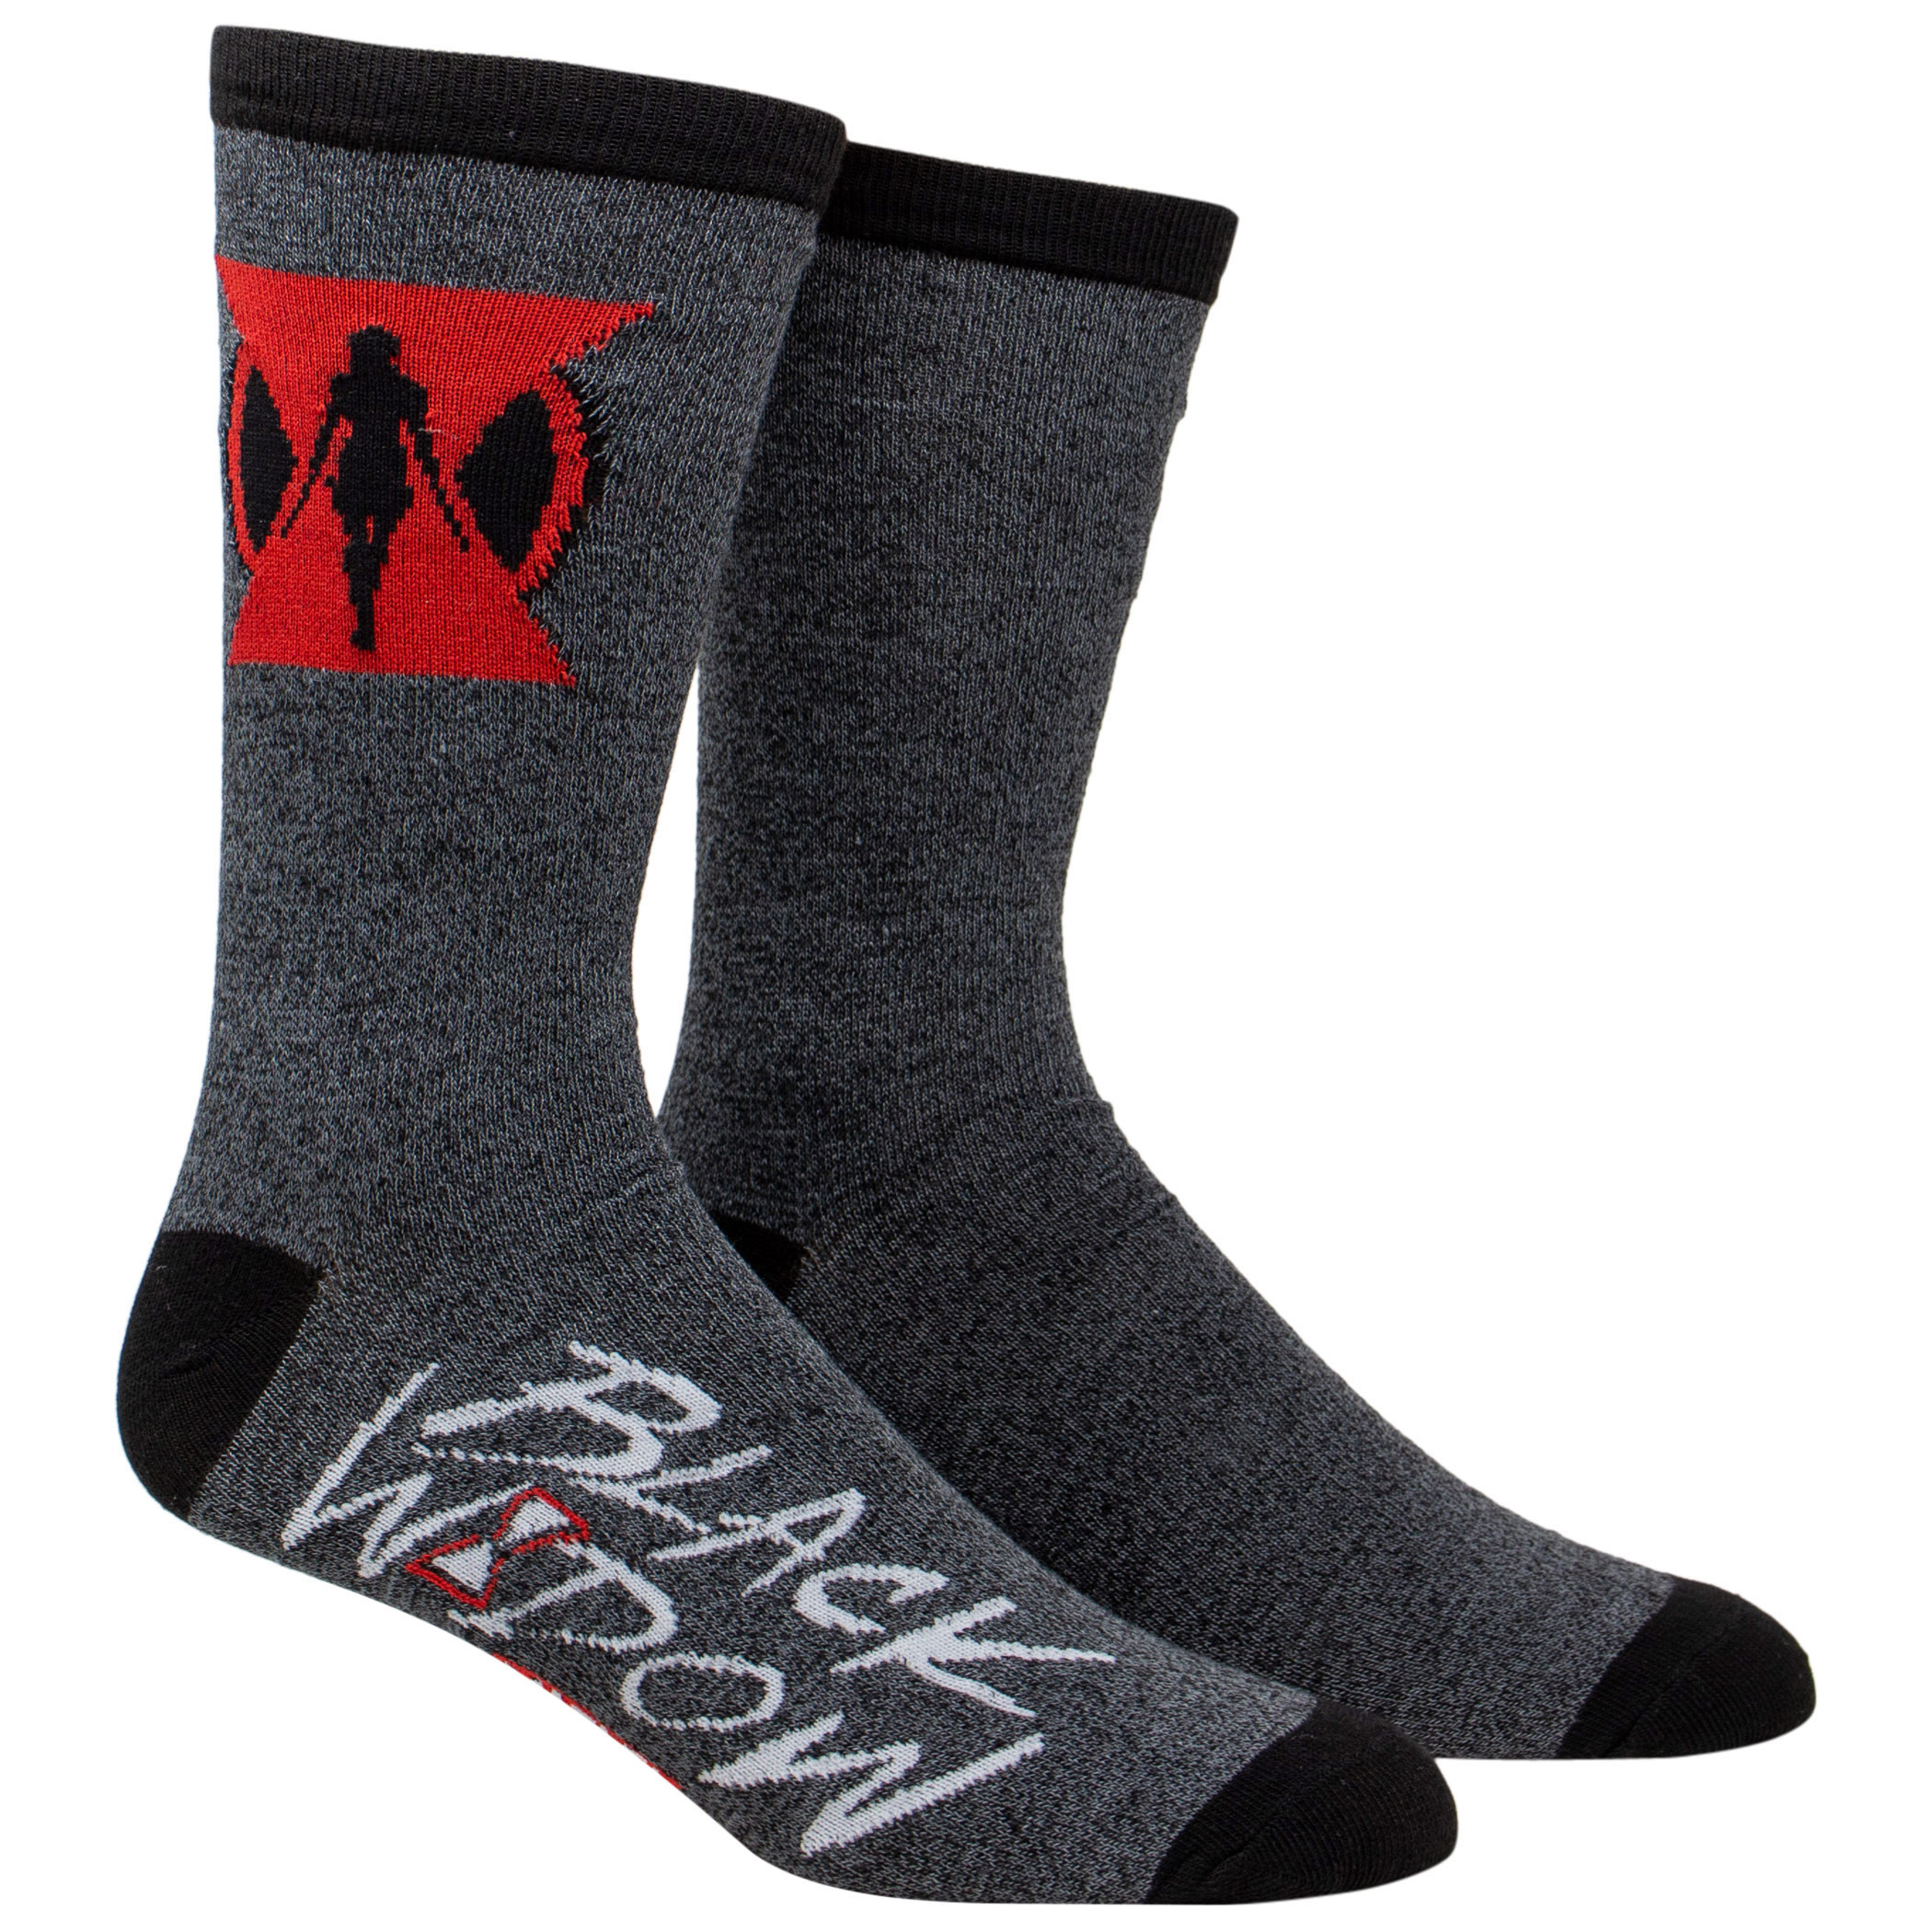 Hawkeye and Black Widow Crew Socks 2-Pair Pack